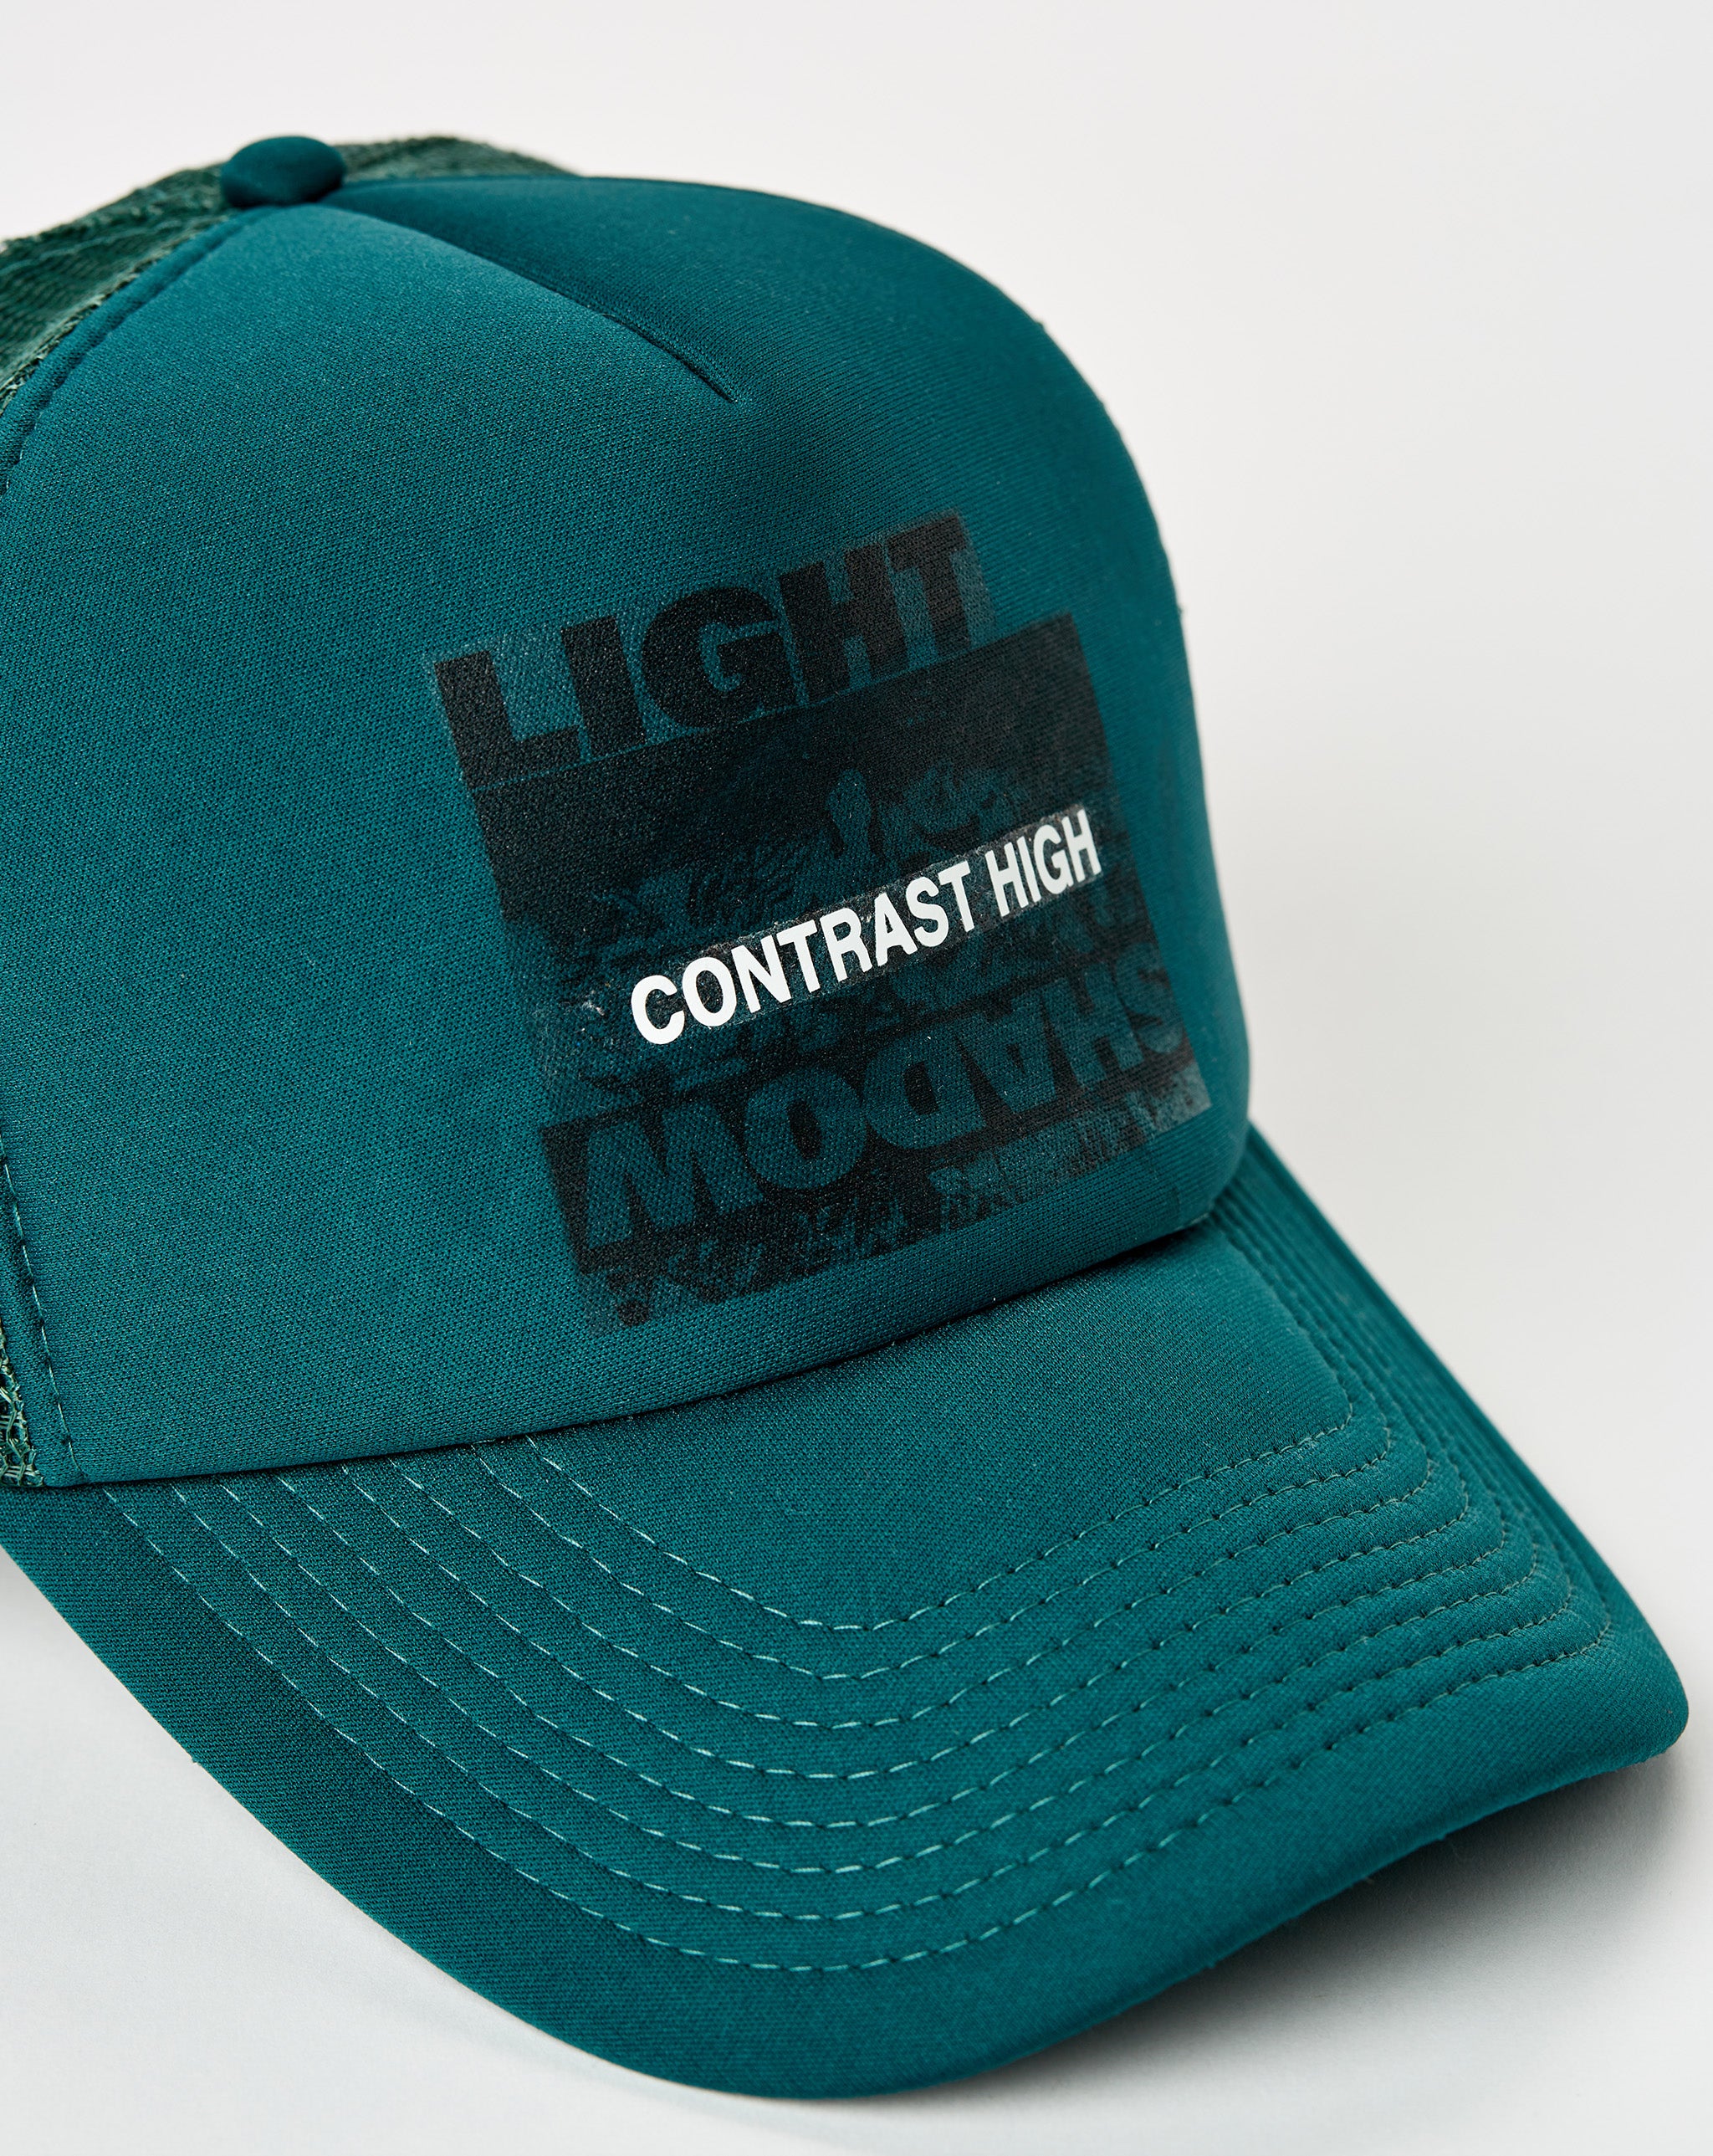 Contrast High CHxX Light/Shadow Hat  - Cheap 127-0 Jordan outlet